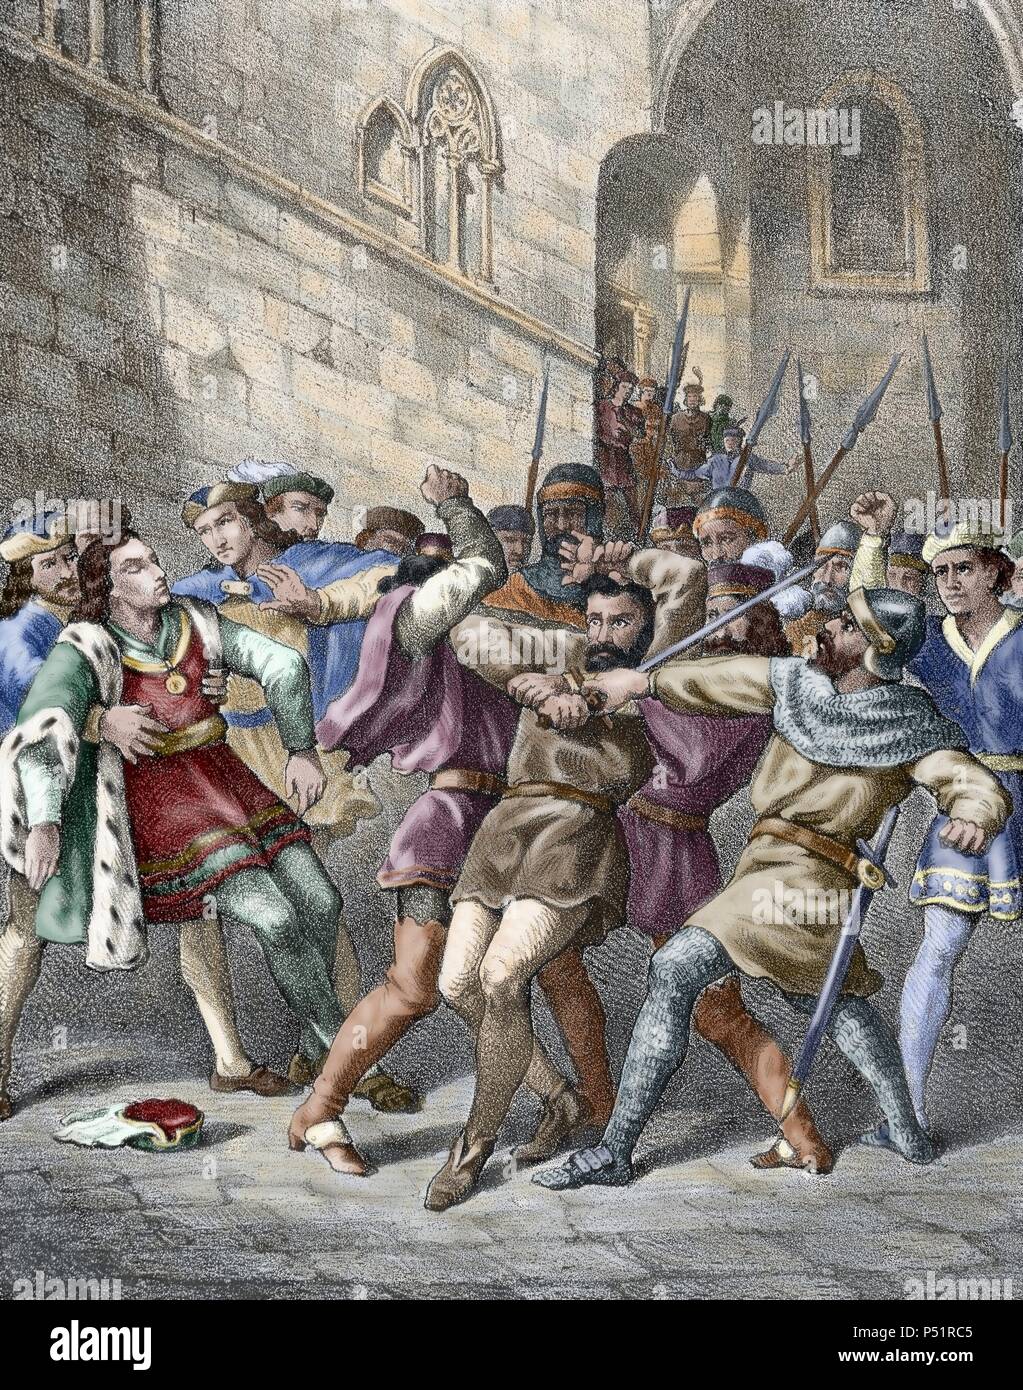 Die Rebellion der Remences. Volksaufstand im späten Mittelalter Europa gegen seignorial Drücke, dass in Katalonien im Jahre 1462 begann und endete ein Jahrzehnt später ohne endgültige Ergebnis. Ferdinand II. von Aragon (Ferdinand der Katholische) schließlich entschlossen, den Konflikt mit dem Schiedsspruch von Guadalupe (Sentencia Schiedsgericht de Guadalupe) im Jahr 1486. Attentat auf König Ferdinand II. von Aragon in Barcelona am 18. Oktober 1492 von einem remenc ein Vasall. Katalonien. Spanien. Farbige Gravur. Stockfoto